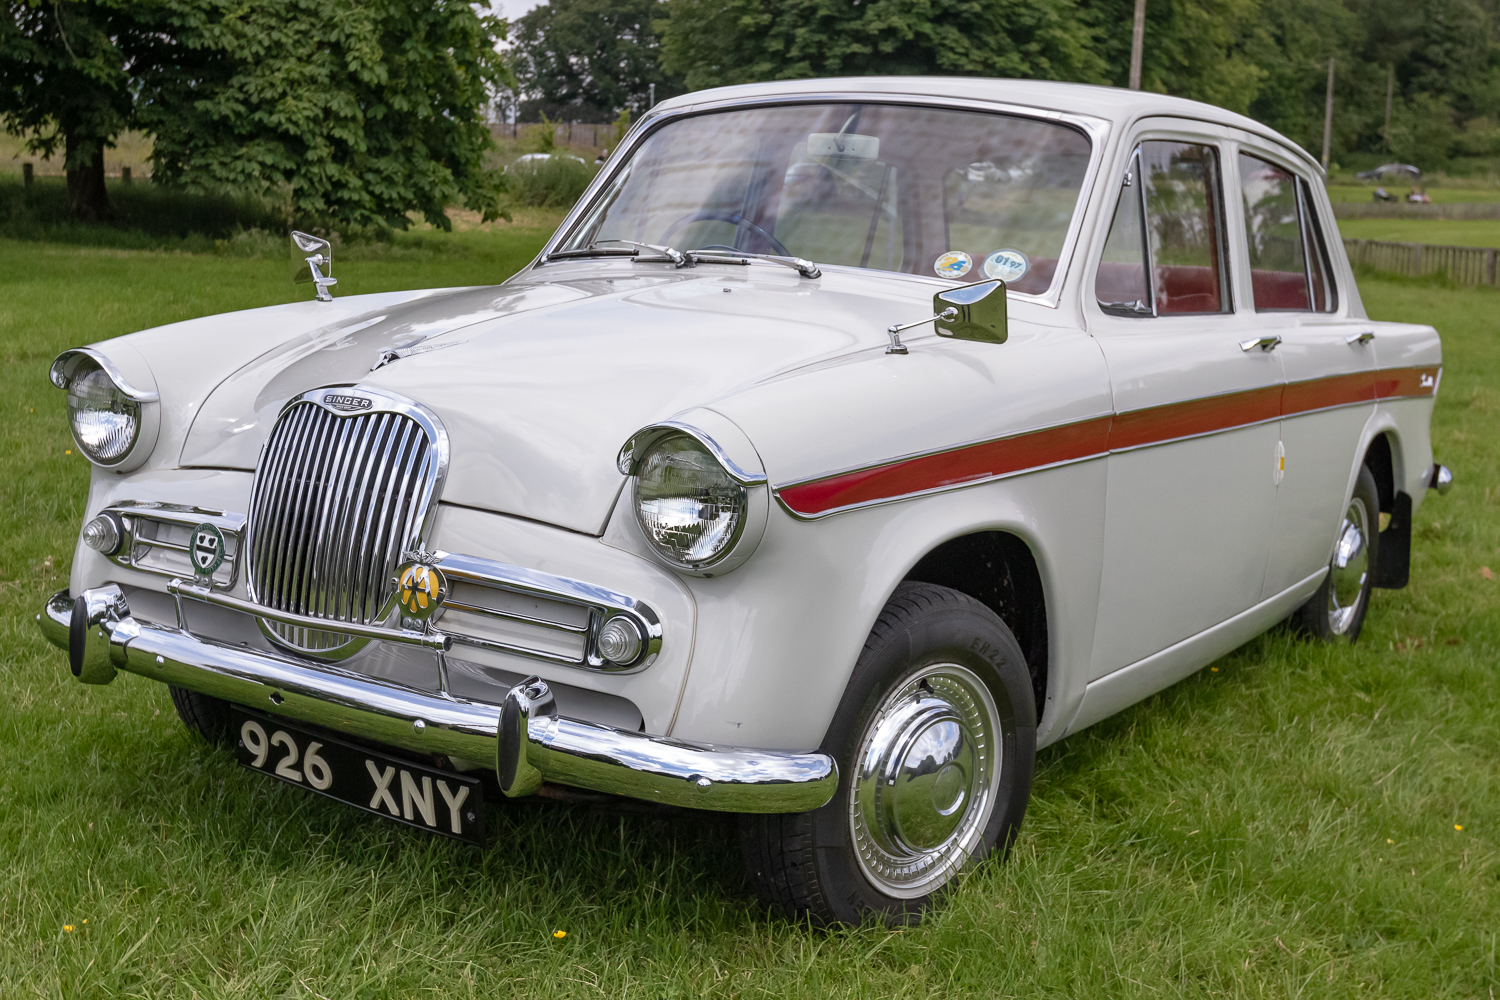 1964 Singer Gazelle Series V Evoke Classics classic cars auction online